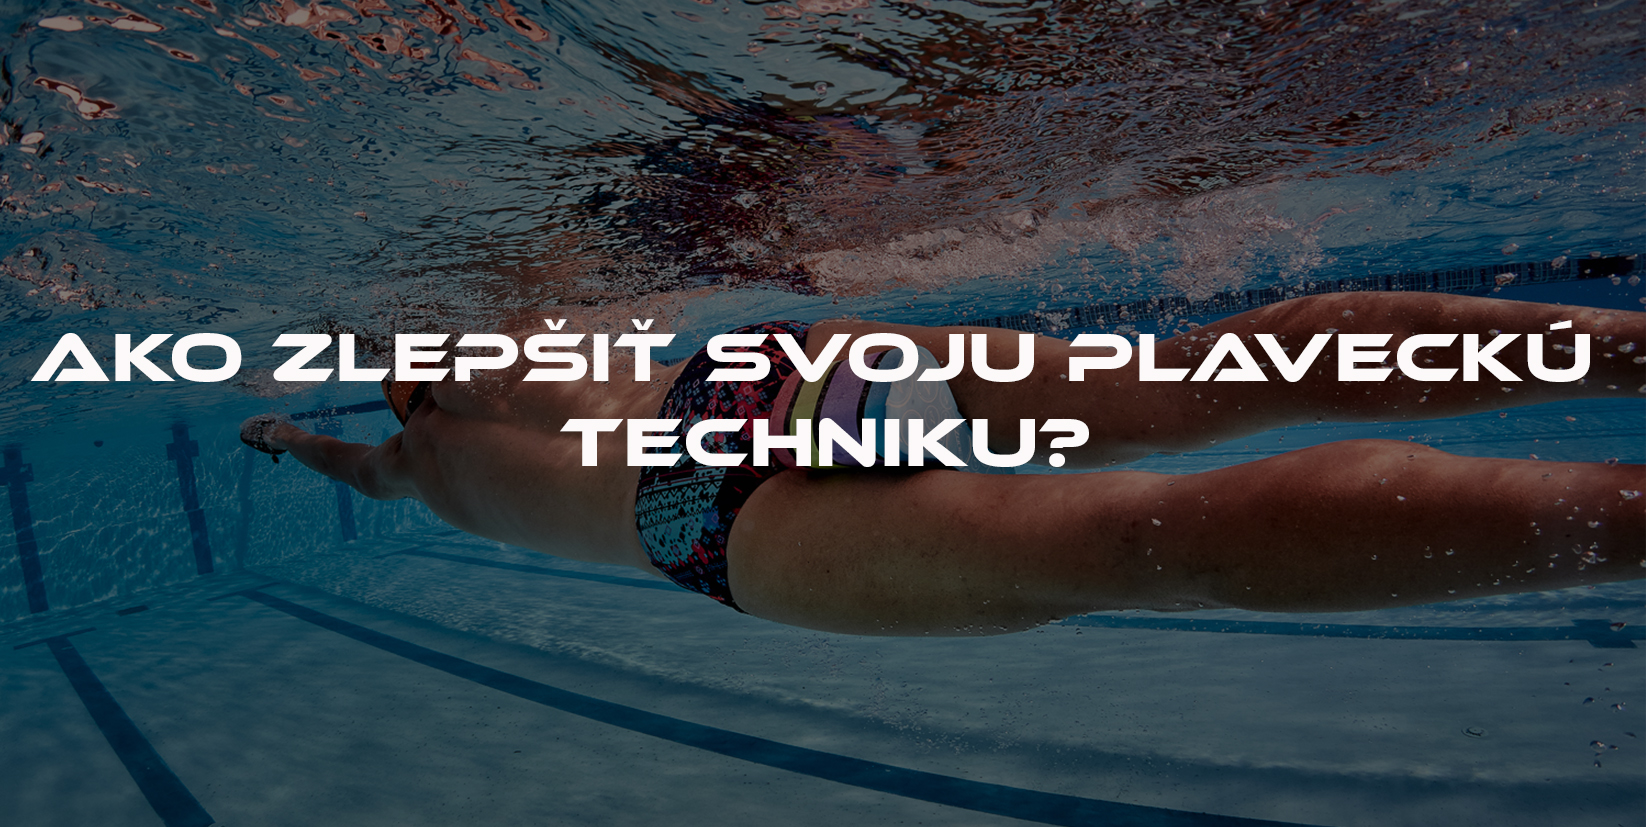 Ako zlepšiť svoju plaveckú techniku?